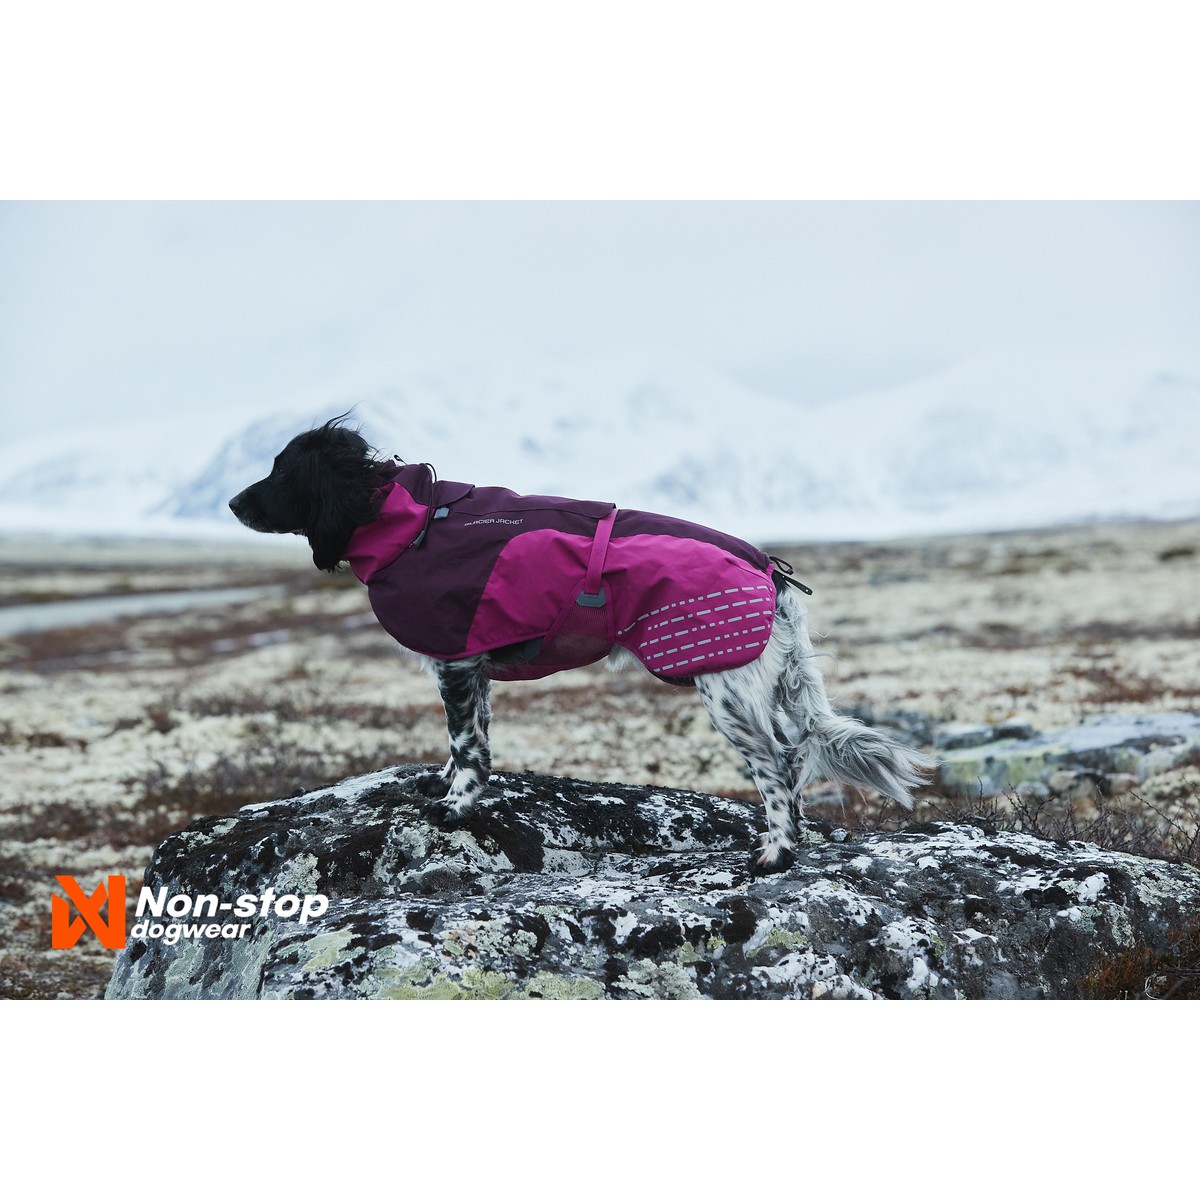 Non-Stop dogwear Glacier Manteau Glacier Jacket T70 Violet T70